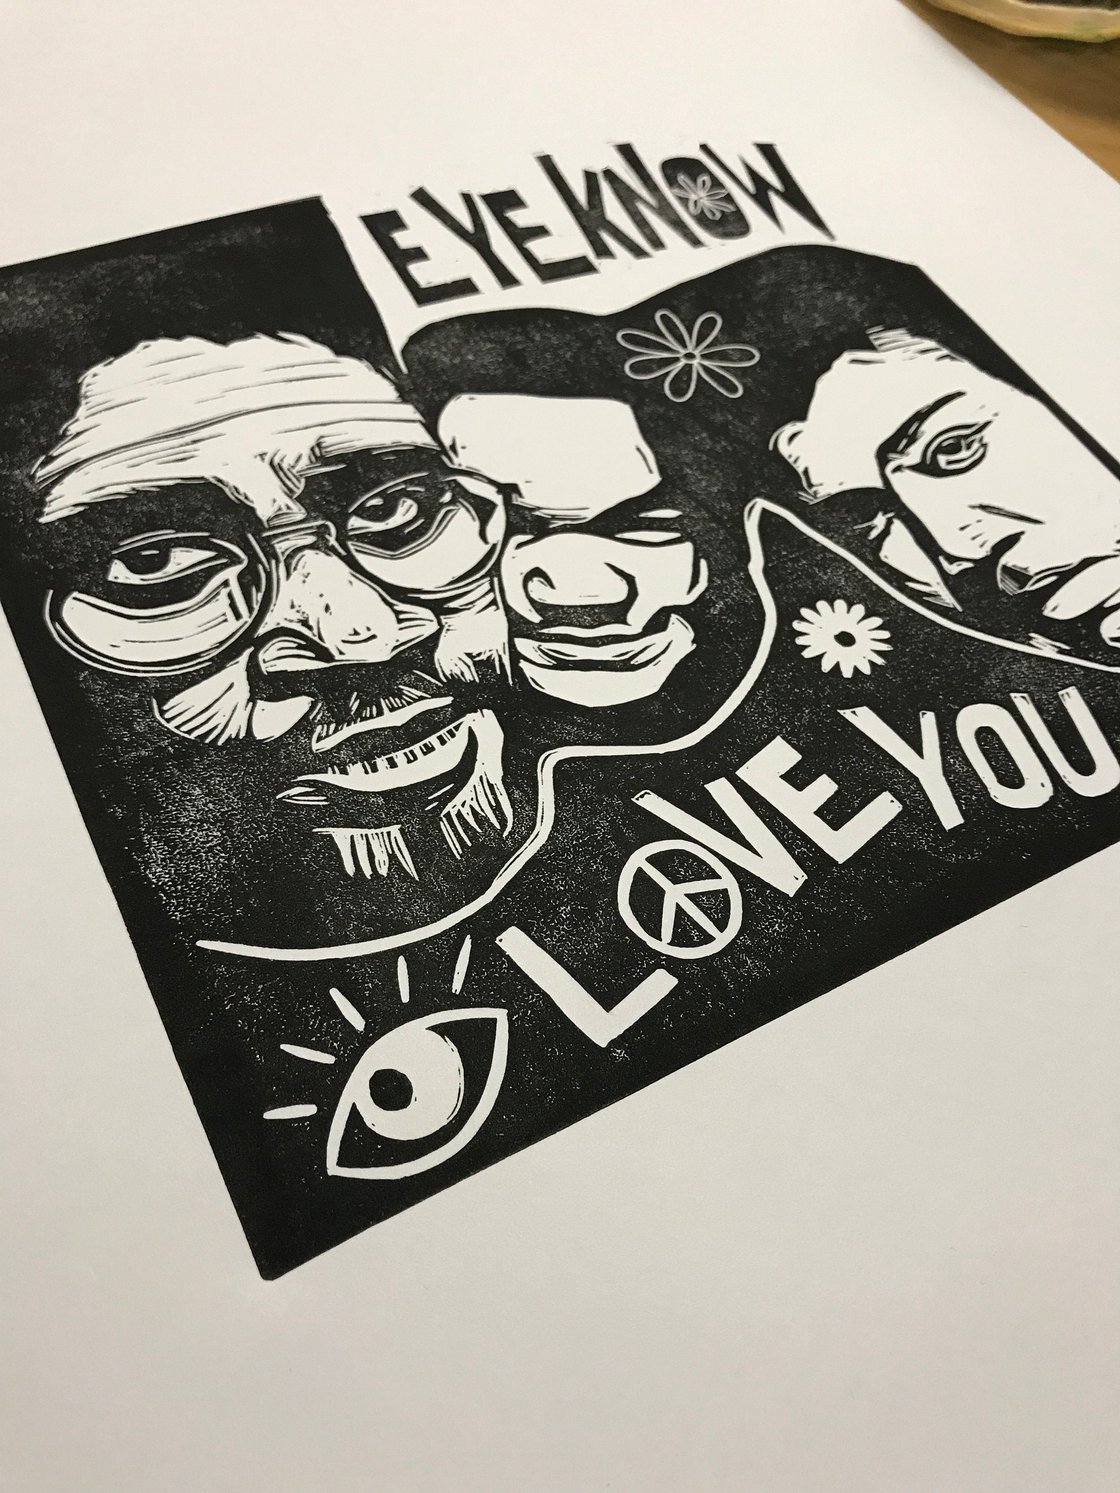 Image of De La Soul. Eye Know Eye Love You. Original A3 linocut print.